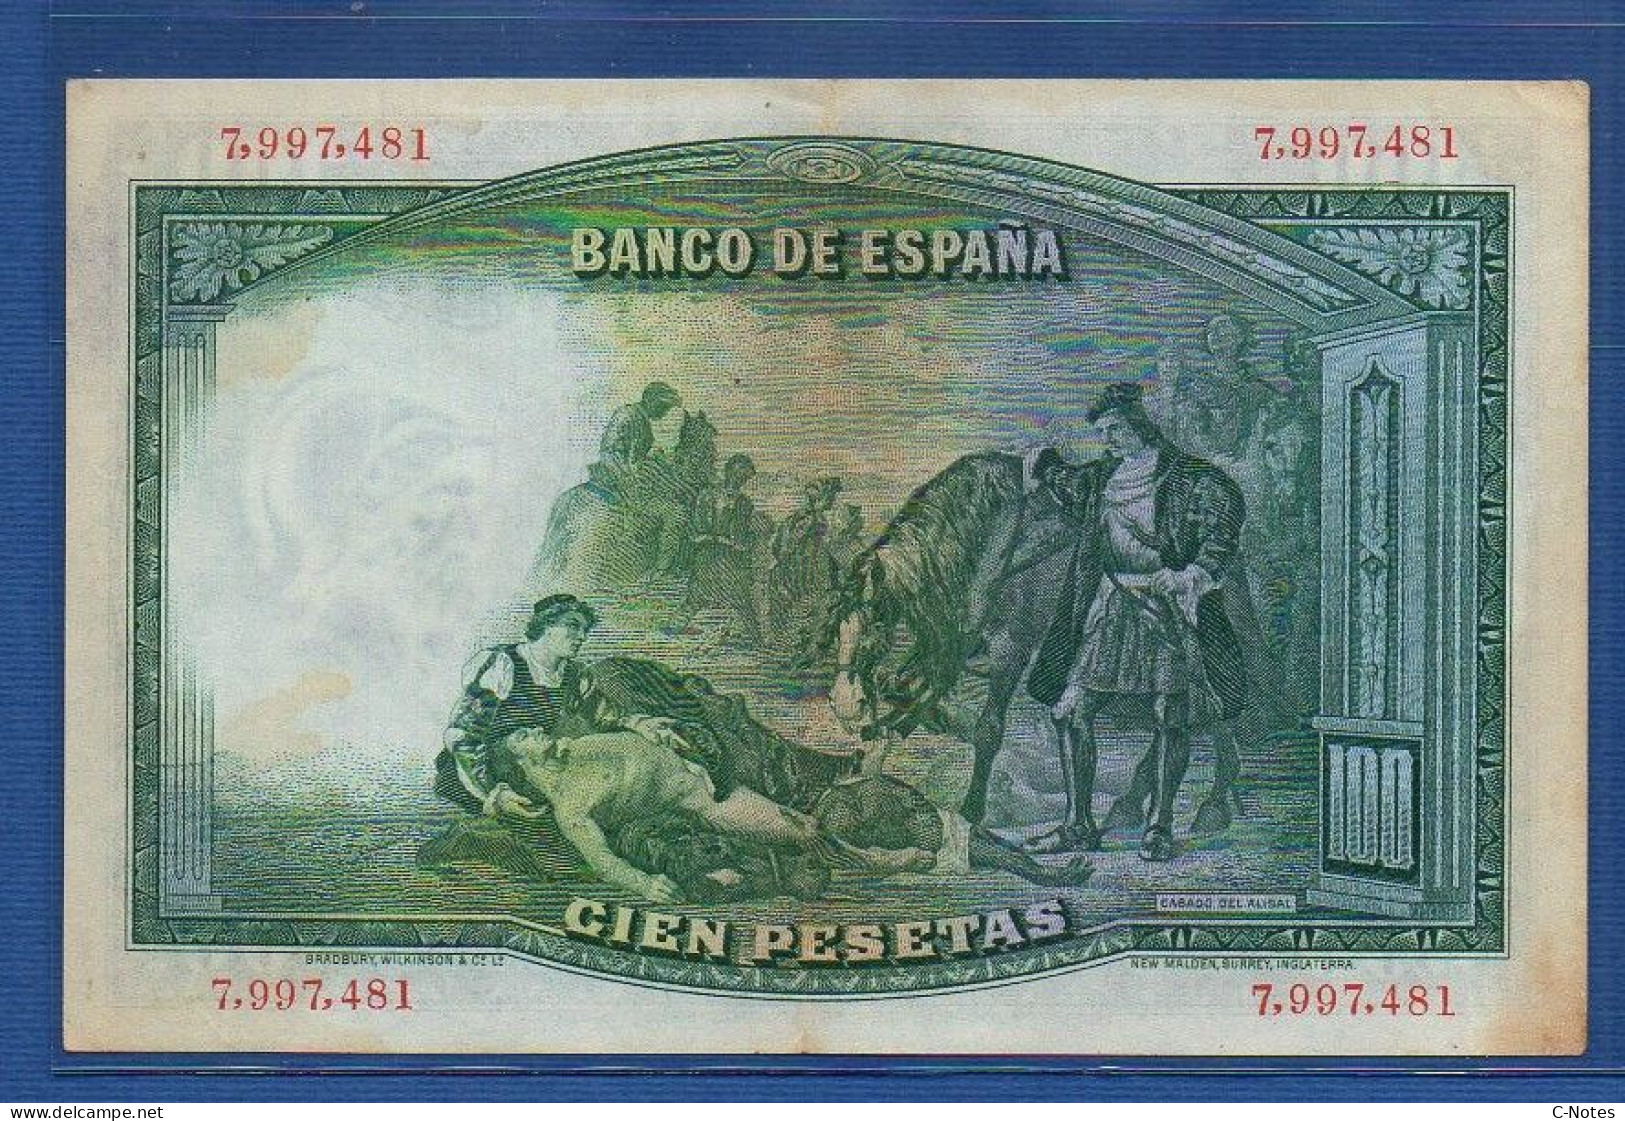 SPAIN - P. 83a – 100 Pesetas 1931 VF+, S/n 7,997,481 - 100 Pesetas